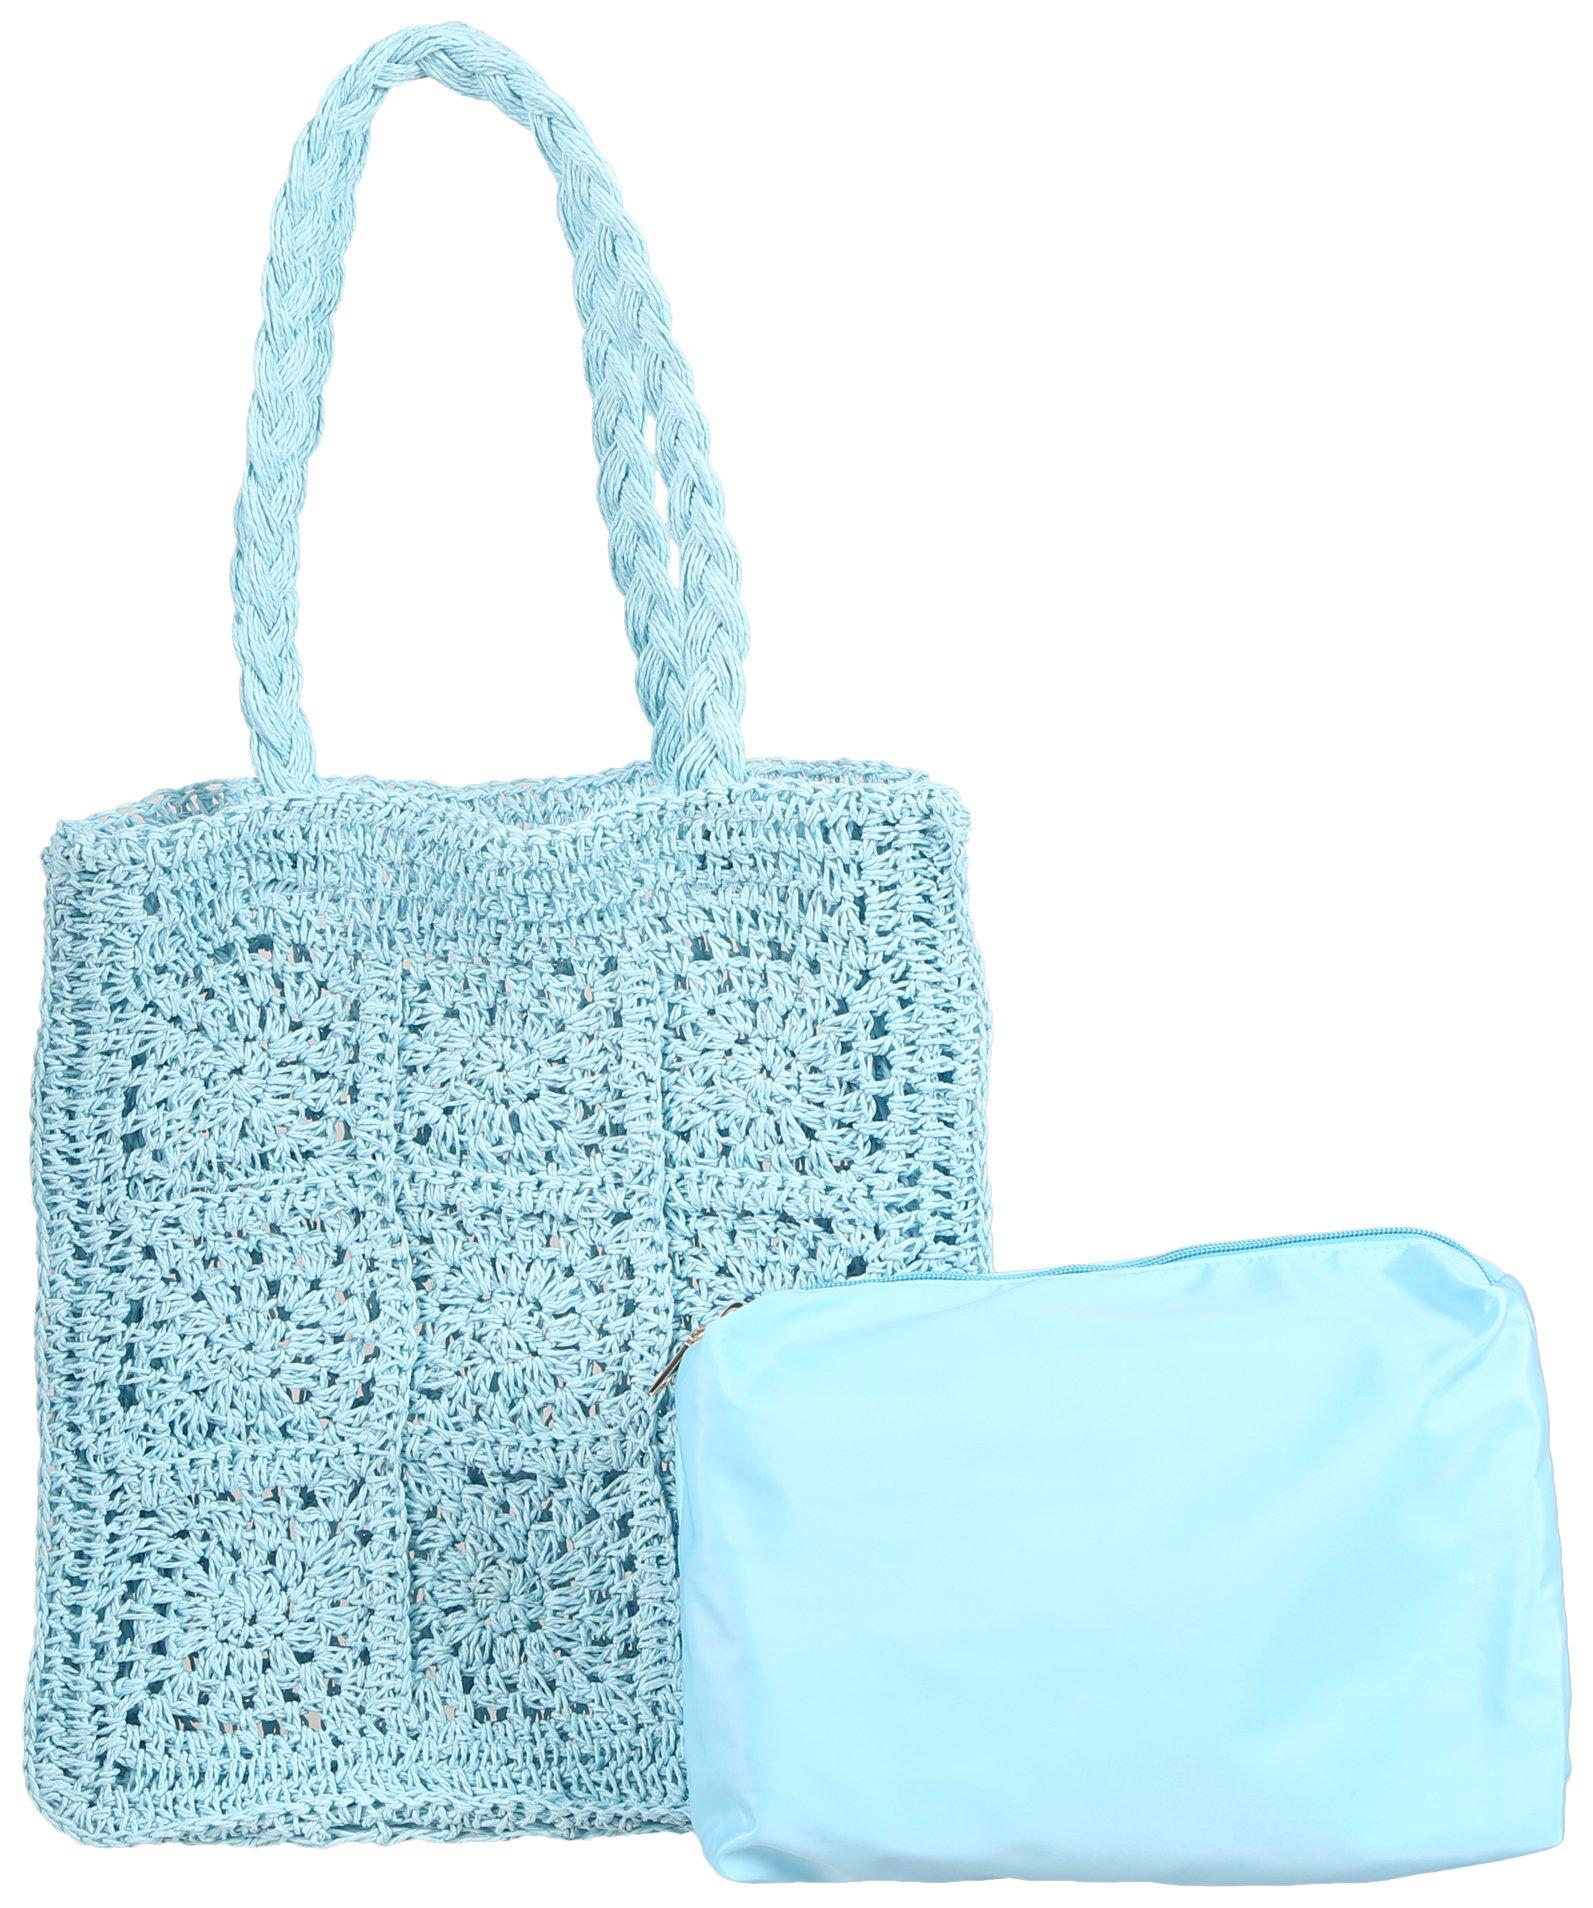 Amalfi Crochet Tote Bag & Bonus Bag